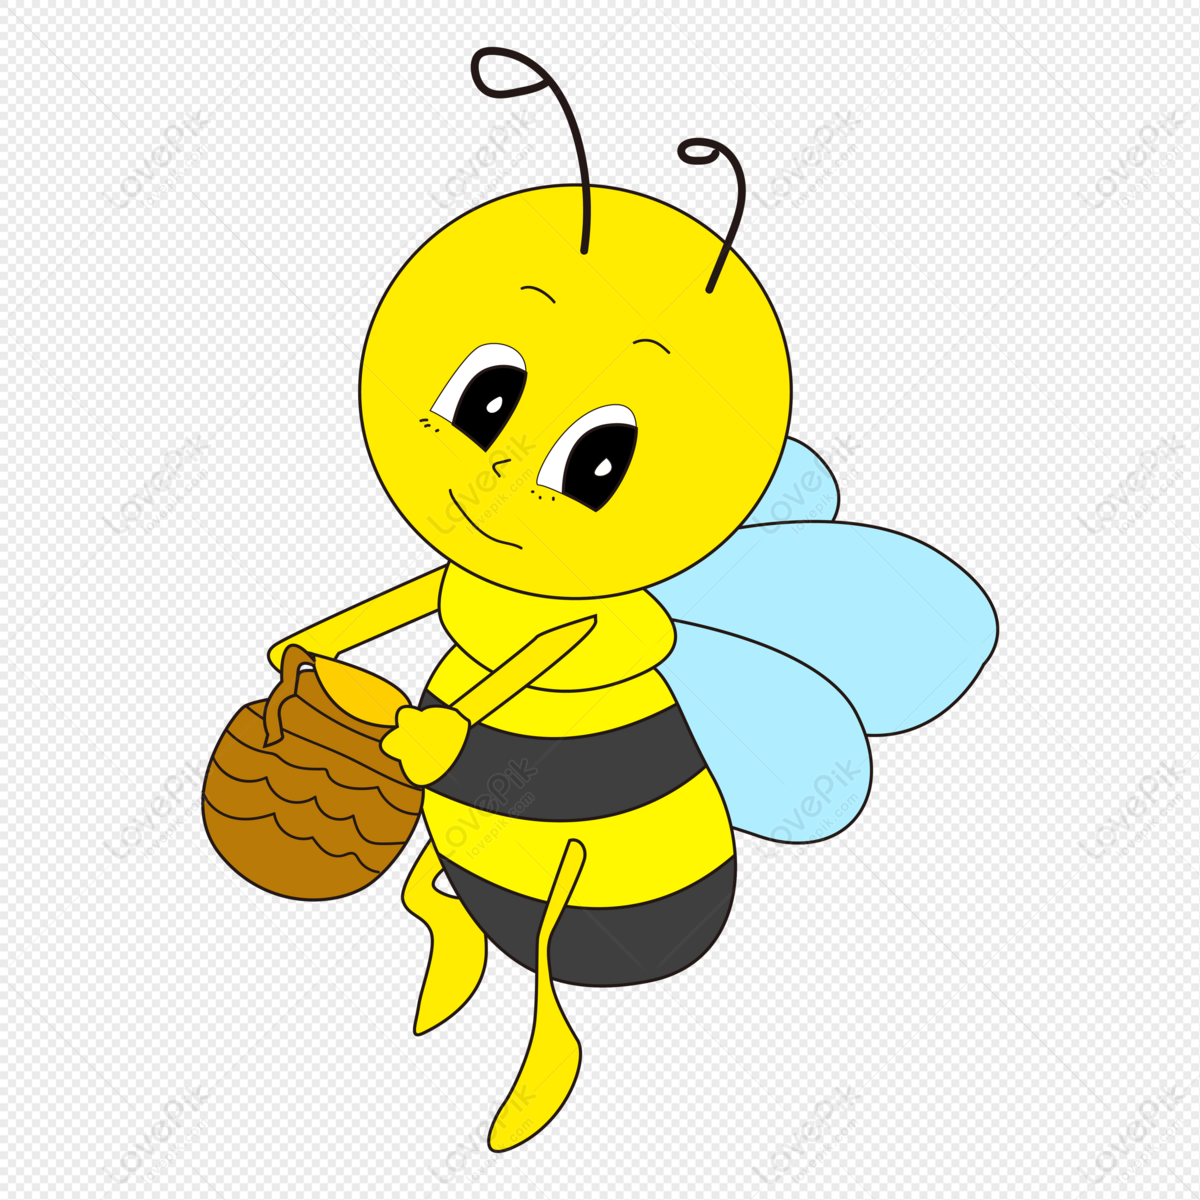 Hình ảnh ong hút mật ong hoa cà phê tuyệt đẹp có thể bạn chưa biết